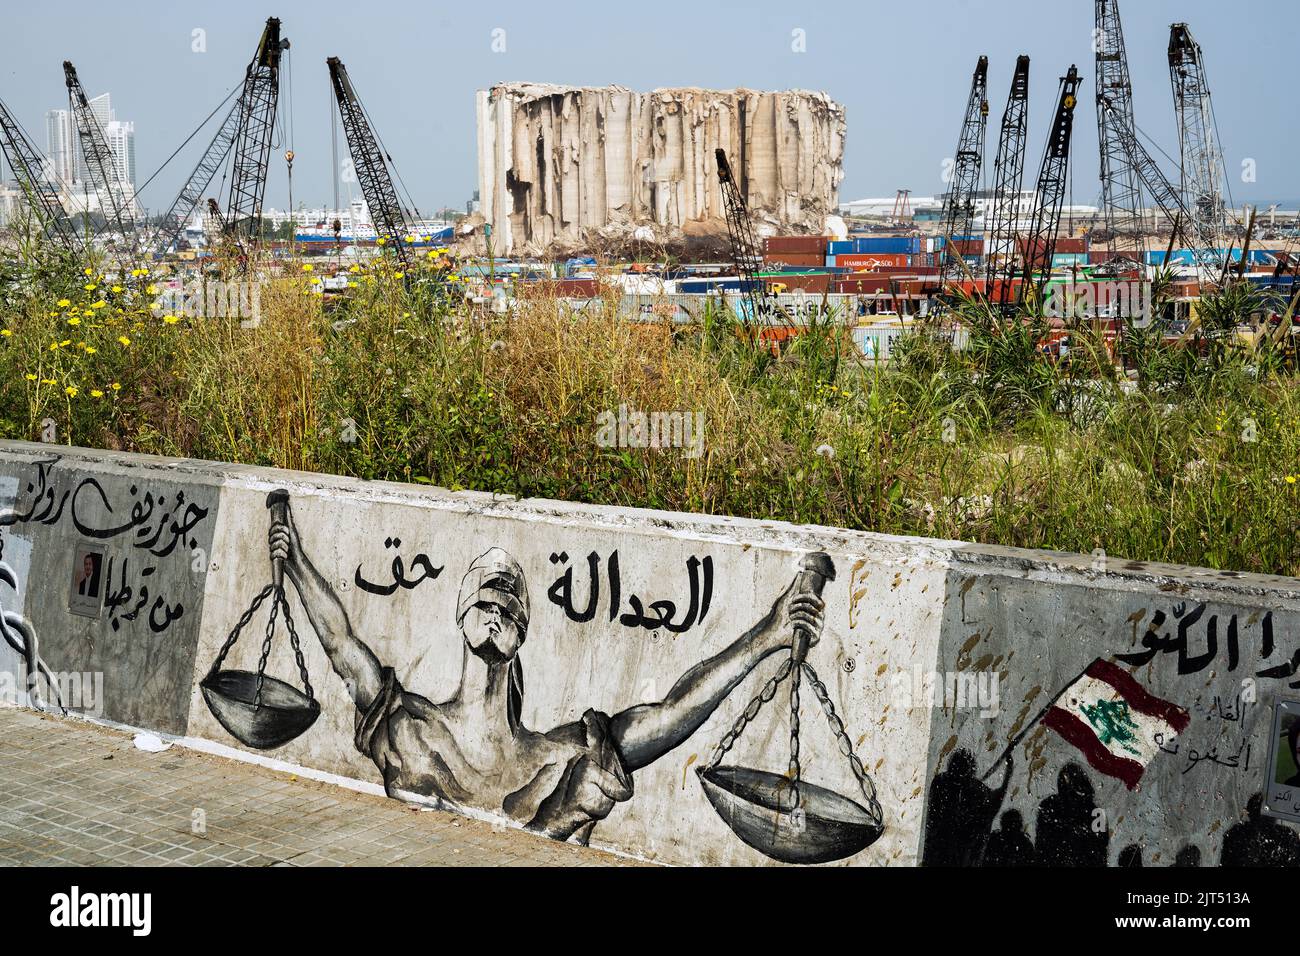 Beirut, Libano: Graffiti sul muro del porto che mostra i sili di grano distrutti dalla massiccia esplosione di 2.750 tonnellate di nitrato di ammonio immagazzinato nel porto della città che ha devastato il porto e la città il 8/4/2020 Foto Stock